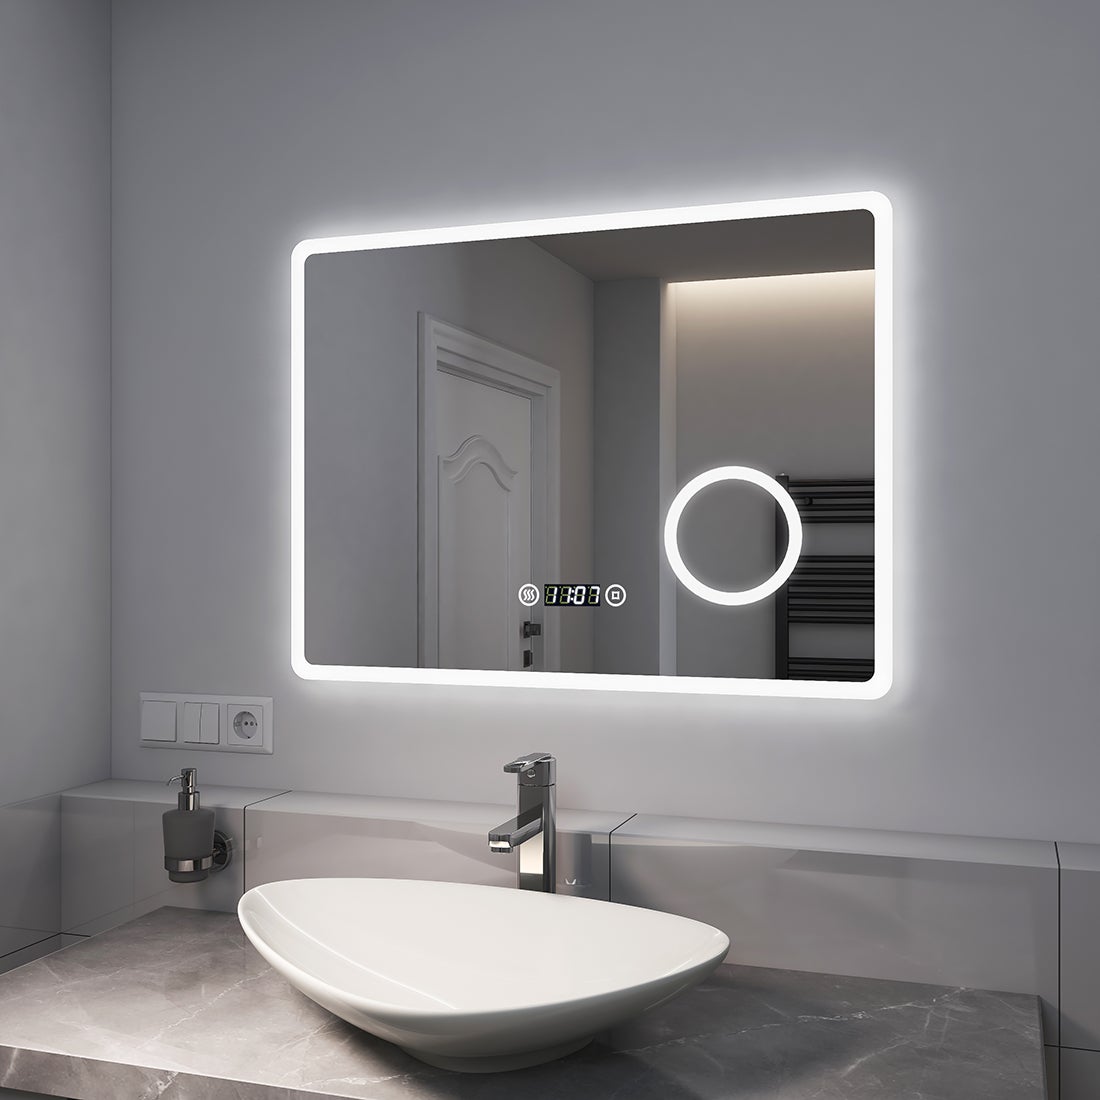 EMKE Badspiegel mit 3-fache Vergrößerung, LED Beleuchtung, 80x60cm, Kaltweißes Licht Dimmbar, Touch, Beschlagfrei, Uhr